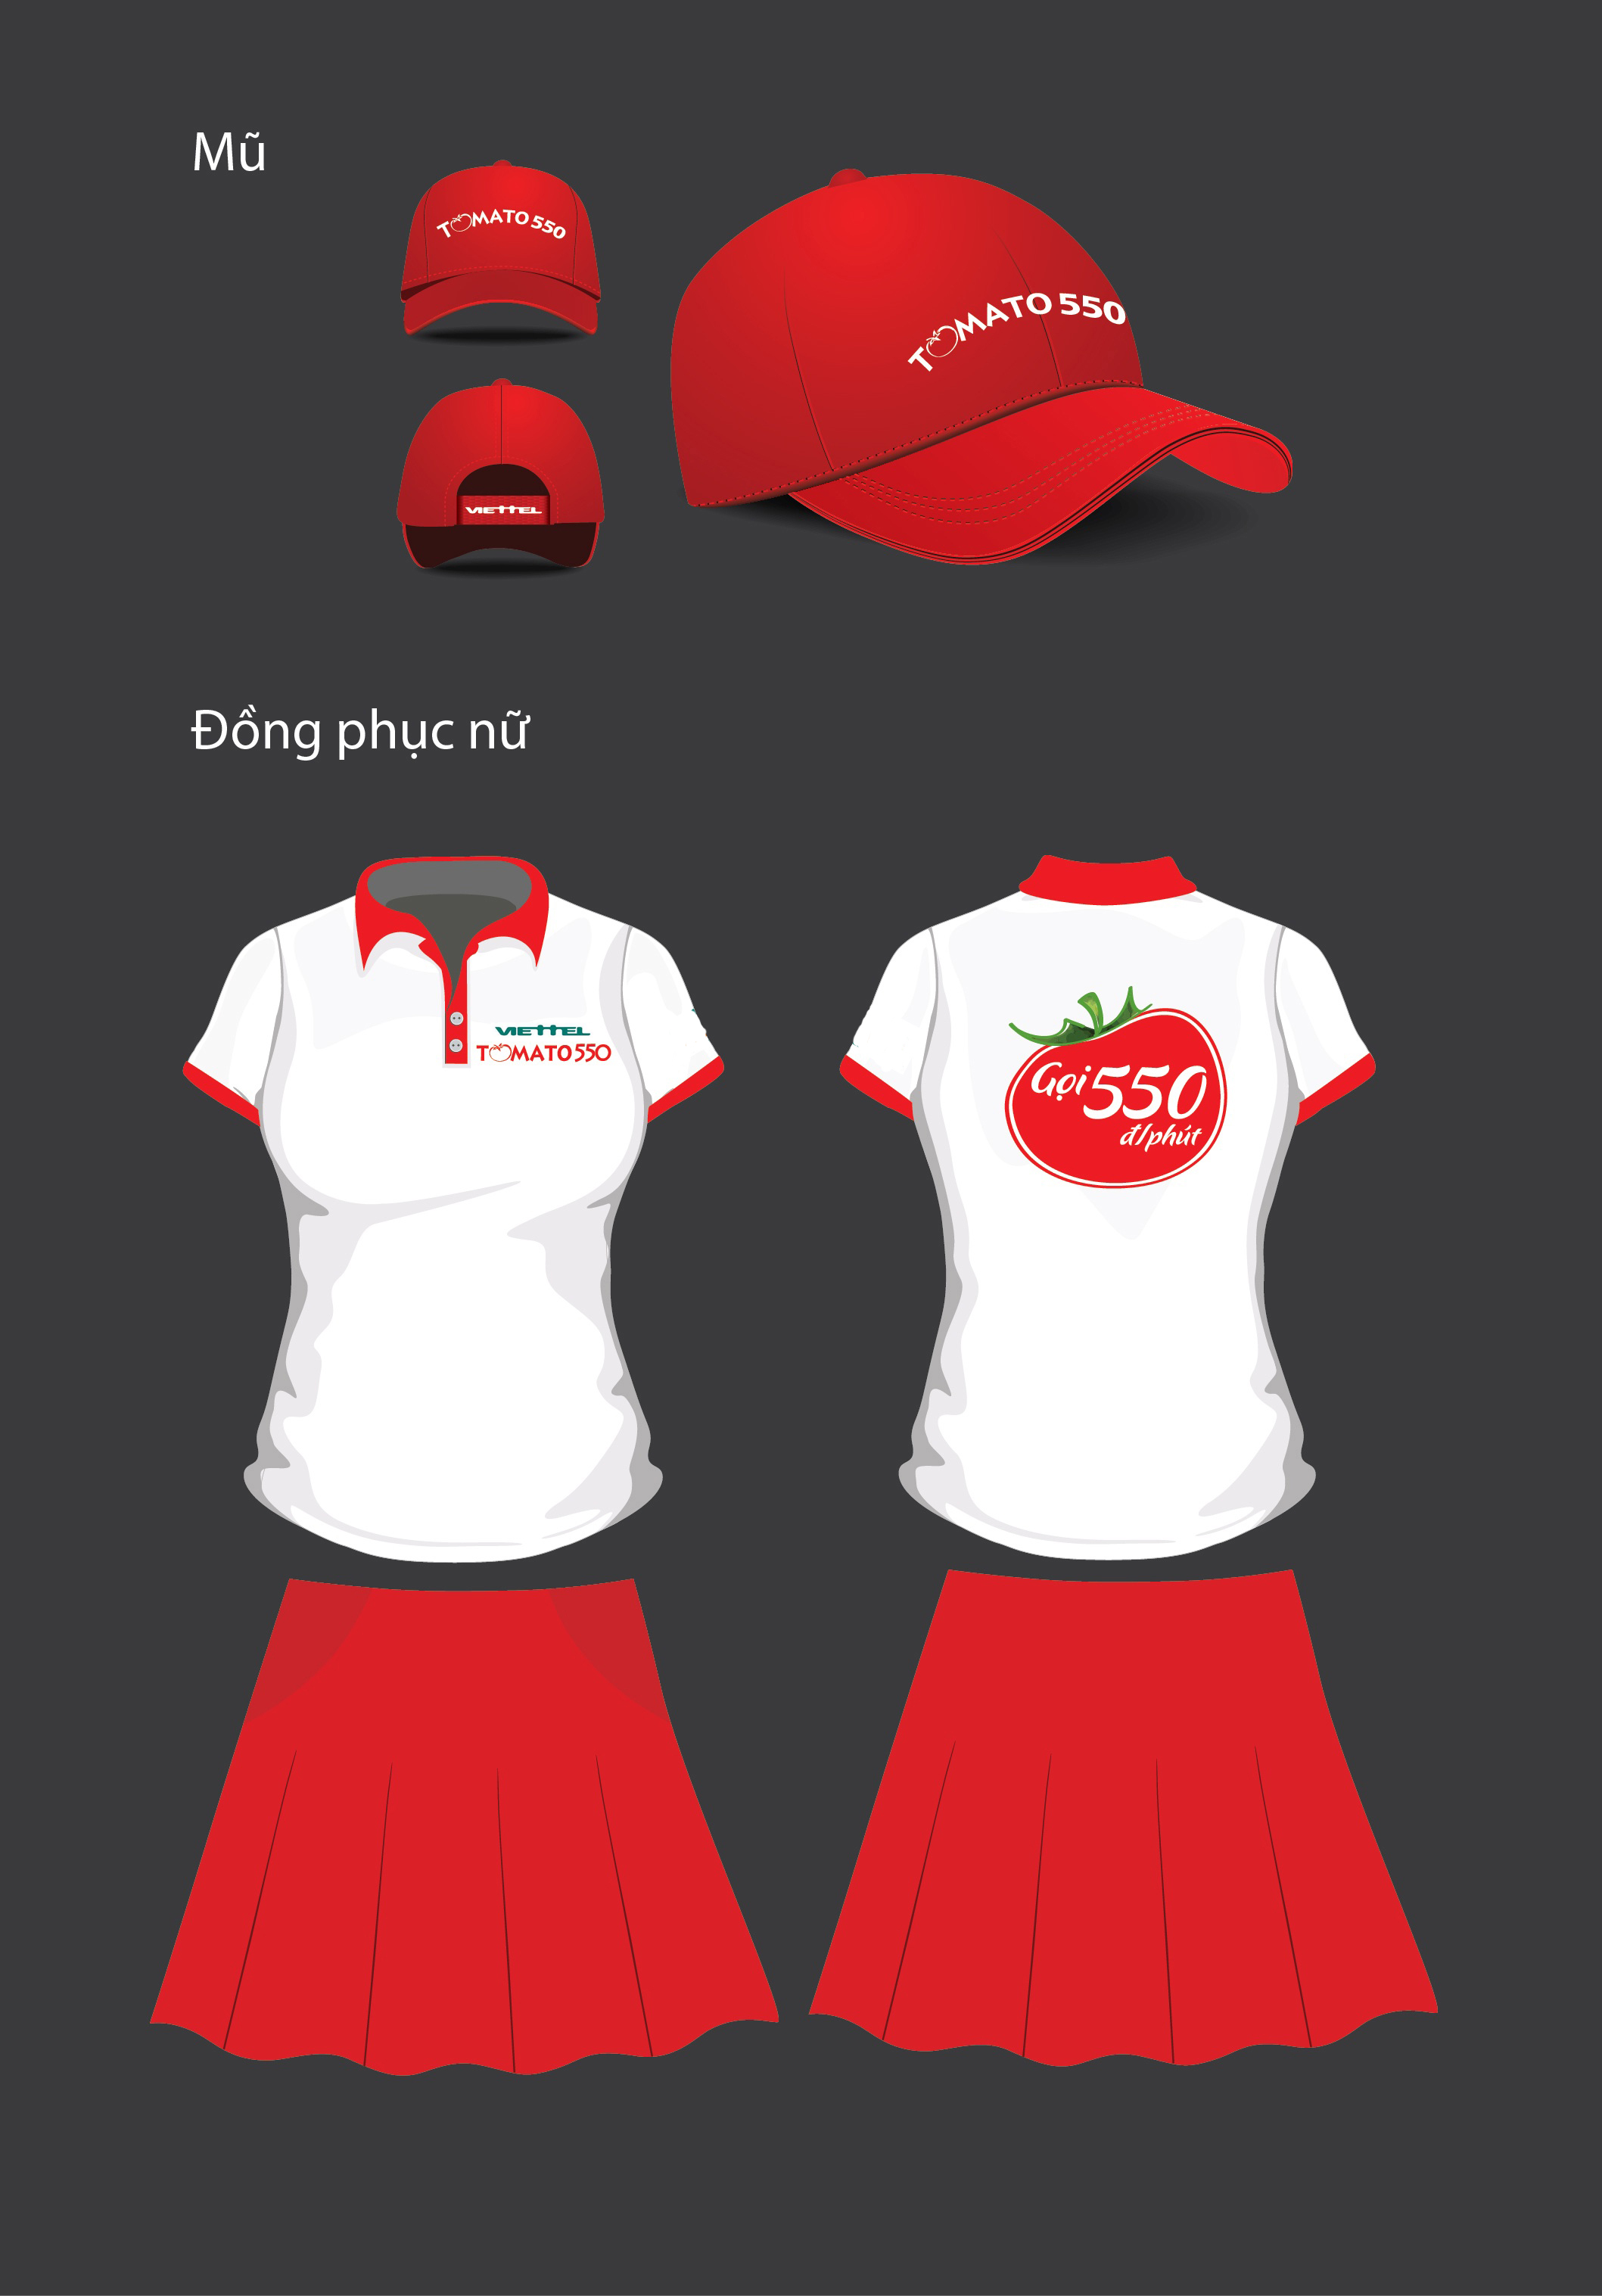 Đồng phục áo thun nữ Viettel tomato 550 - AT16 - Đồng phục giá rẻ